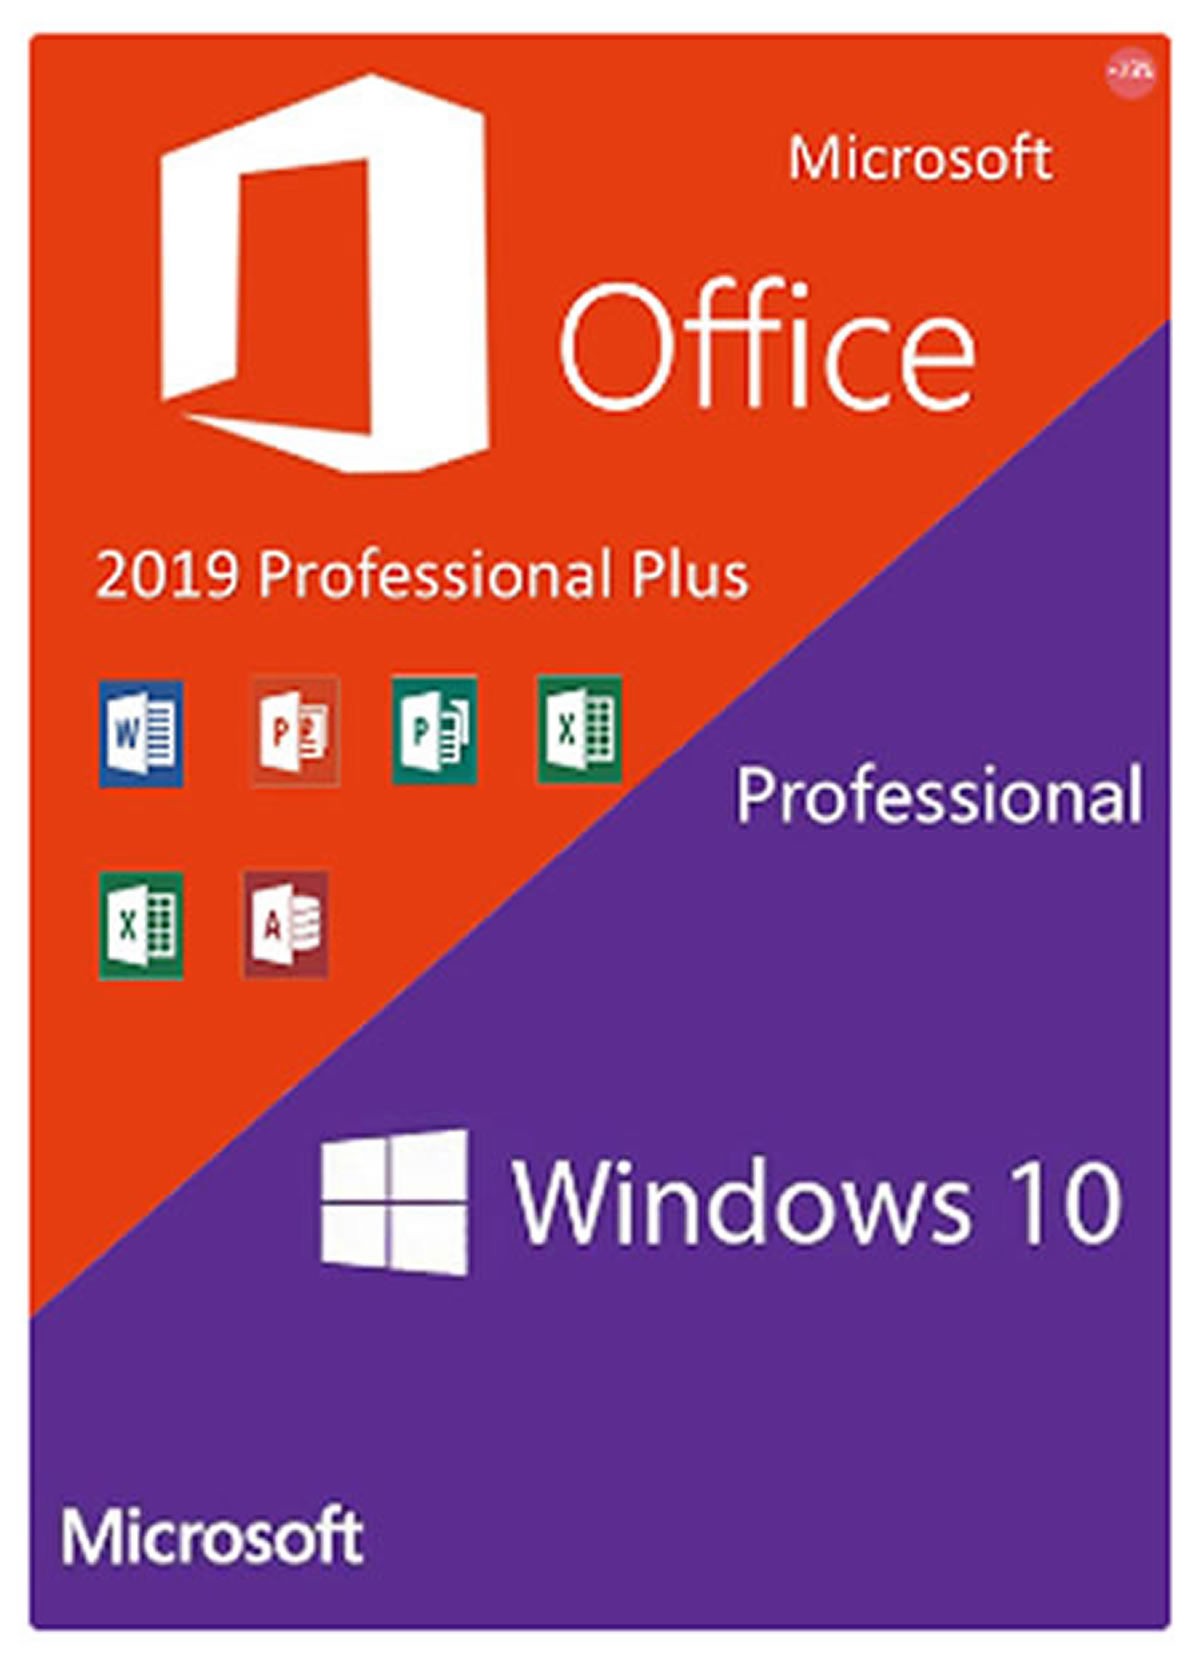 Les derniers jours pour profiter de - 30 % sur vos clés Microsoft Windows 10 Pro, Office 2016 et Office 2019 avec Cowcotland et GVGMALL